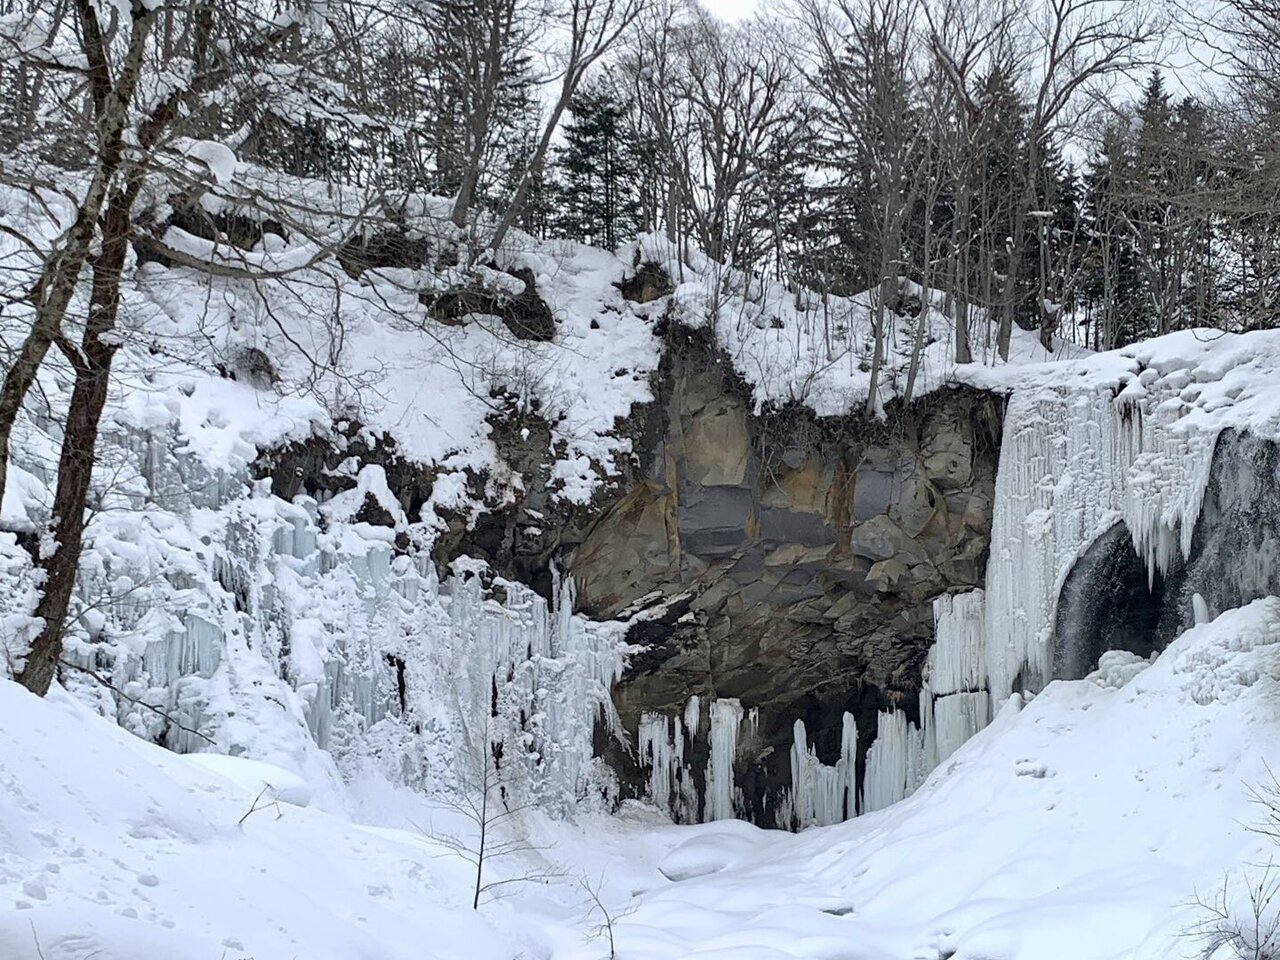 札幌冬の旅行の人気スポット25選　1位:国営滝野すずらん丘陵公園